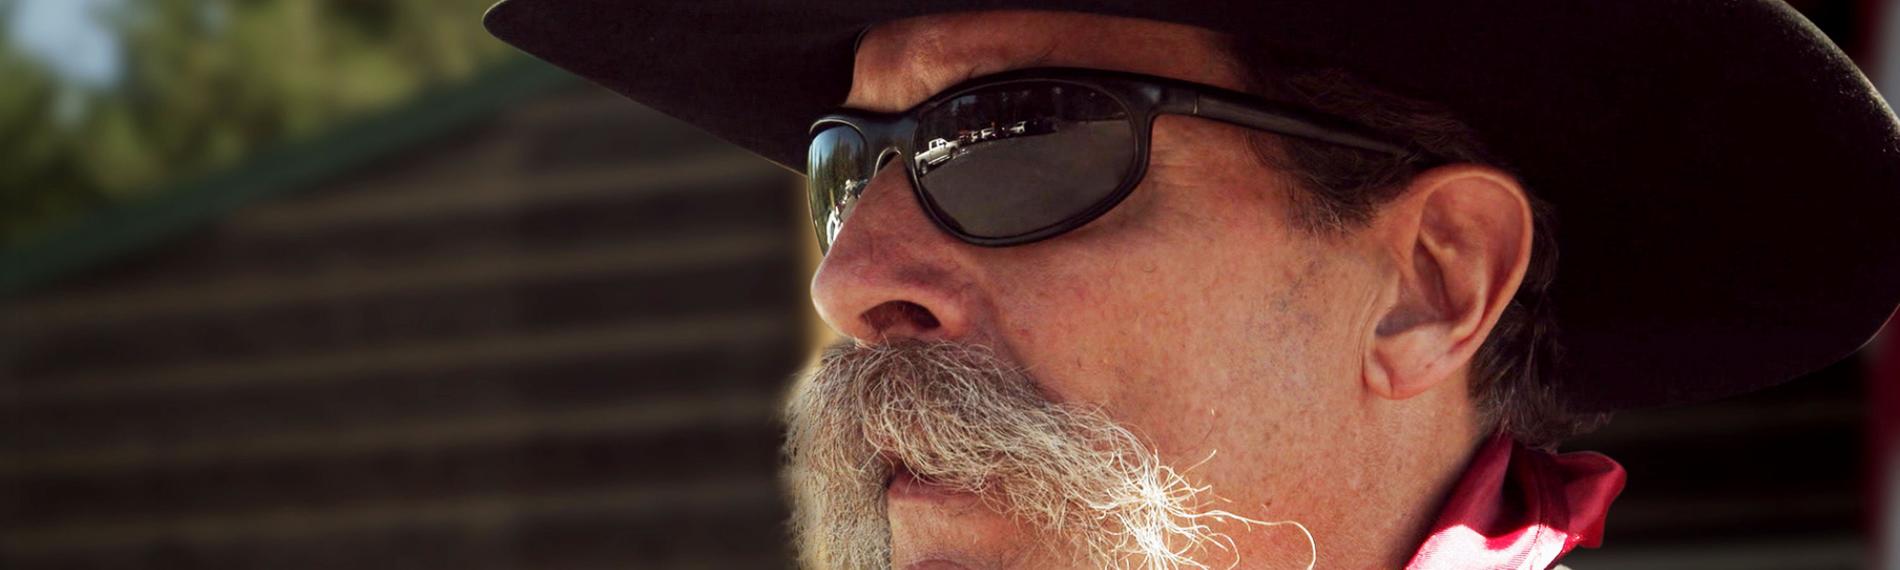 Clyde Tinley, der Mitglied in der "North Idaho Miliz", im Profil im Cowboy-Look mit Sonnenbrille.